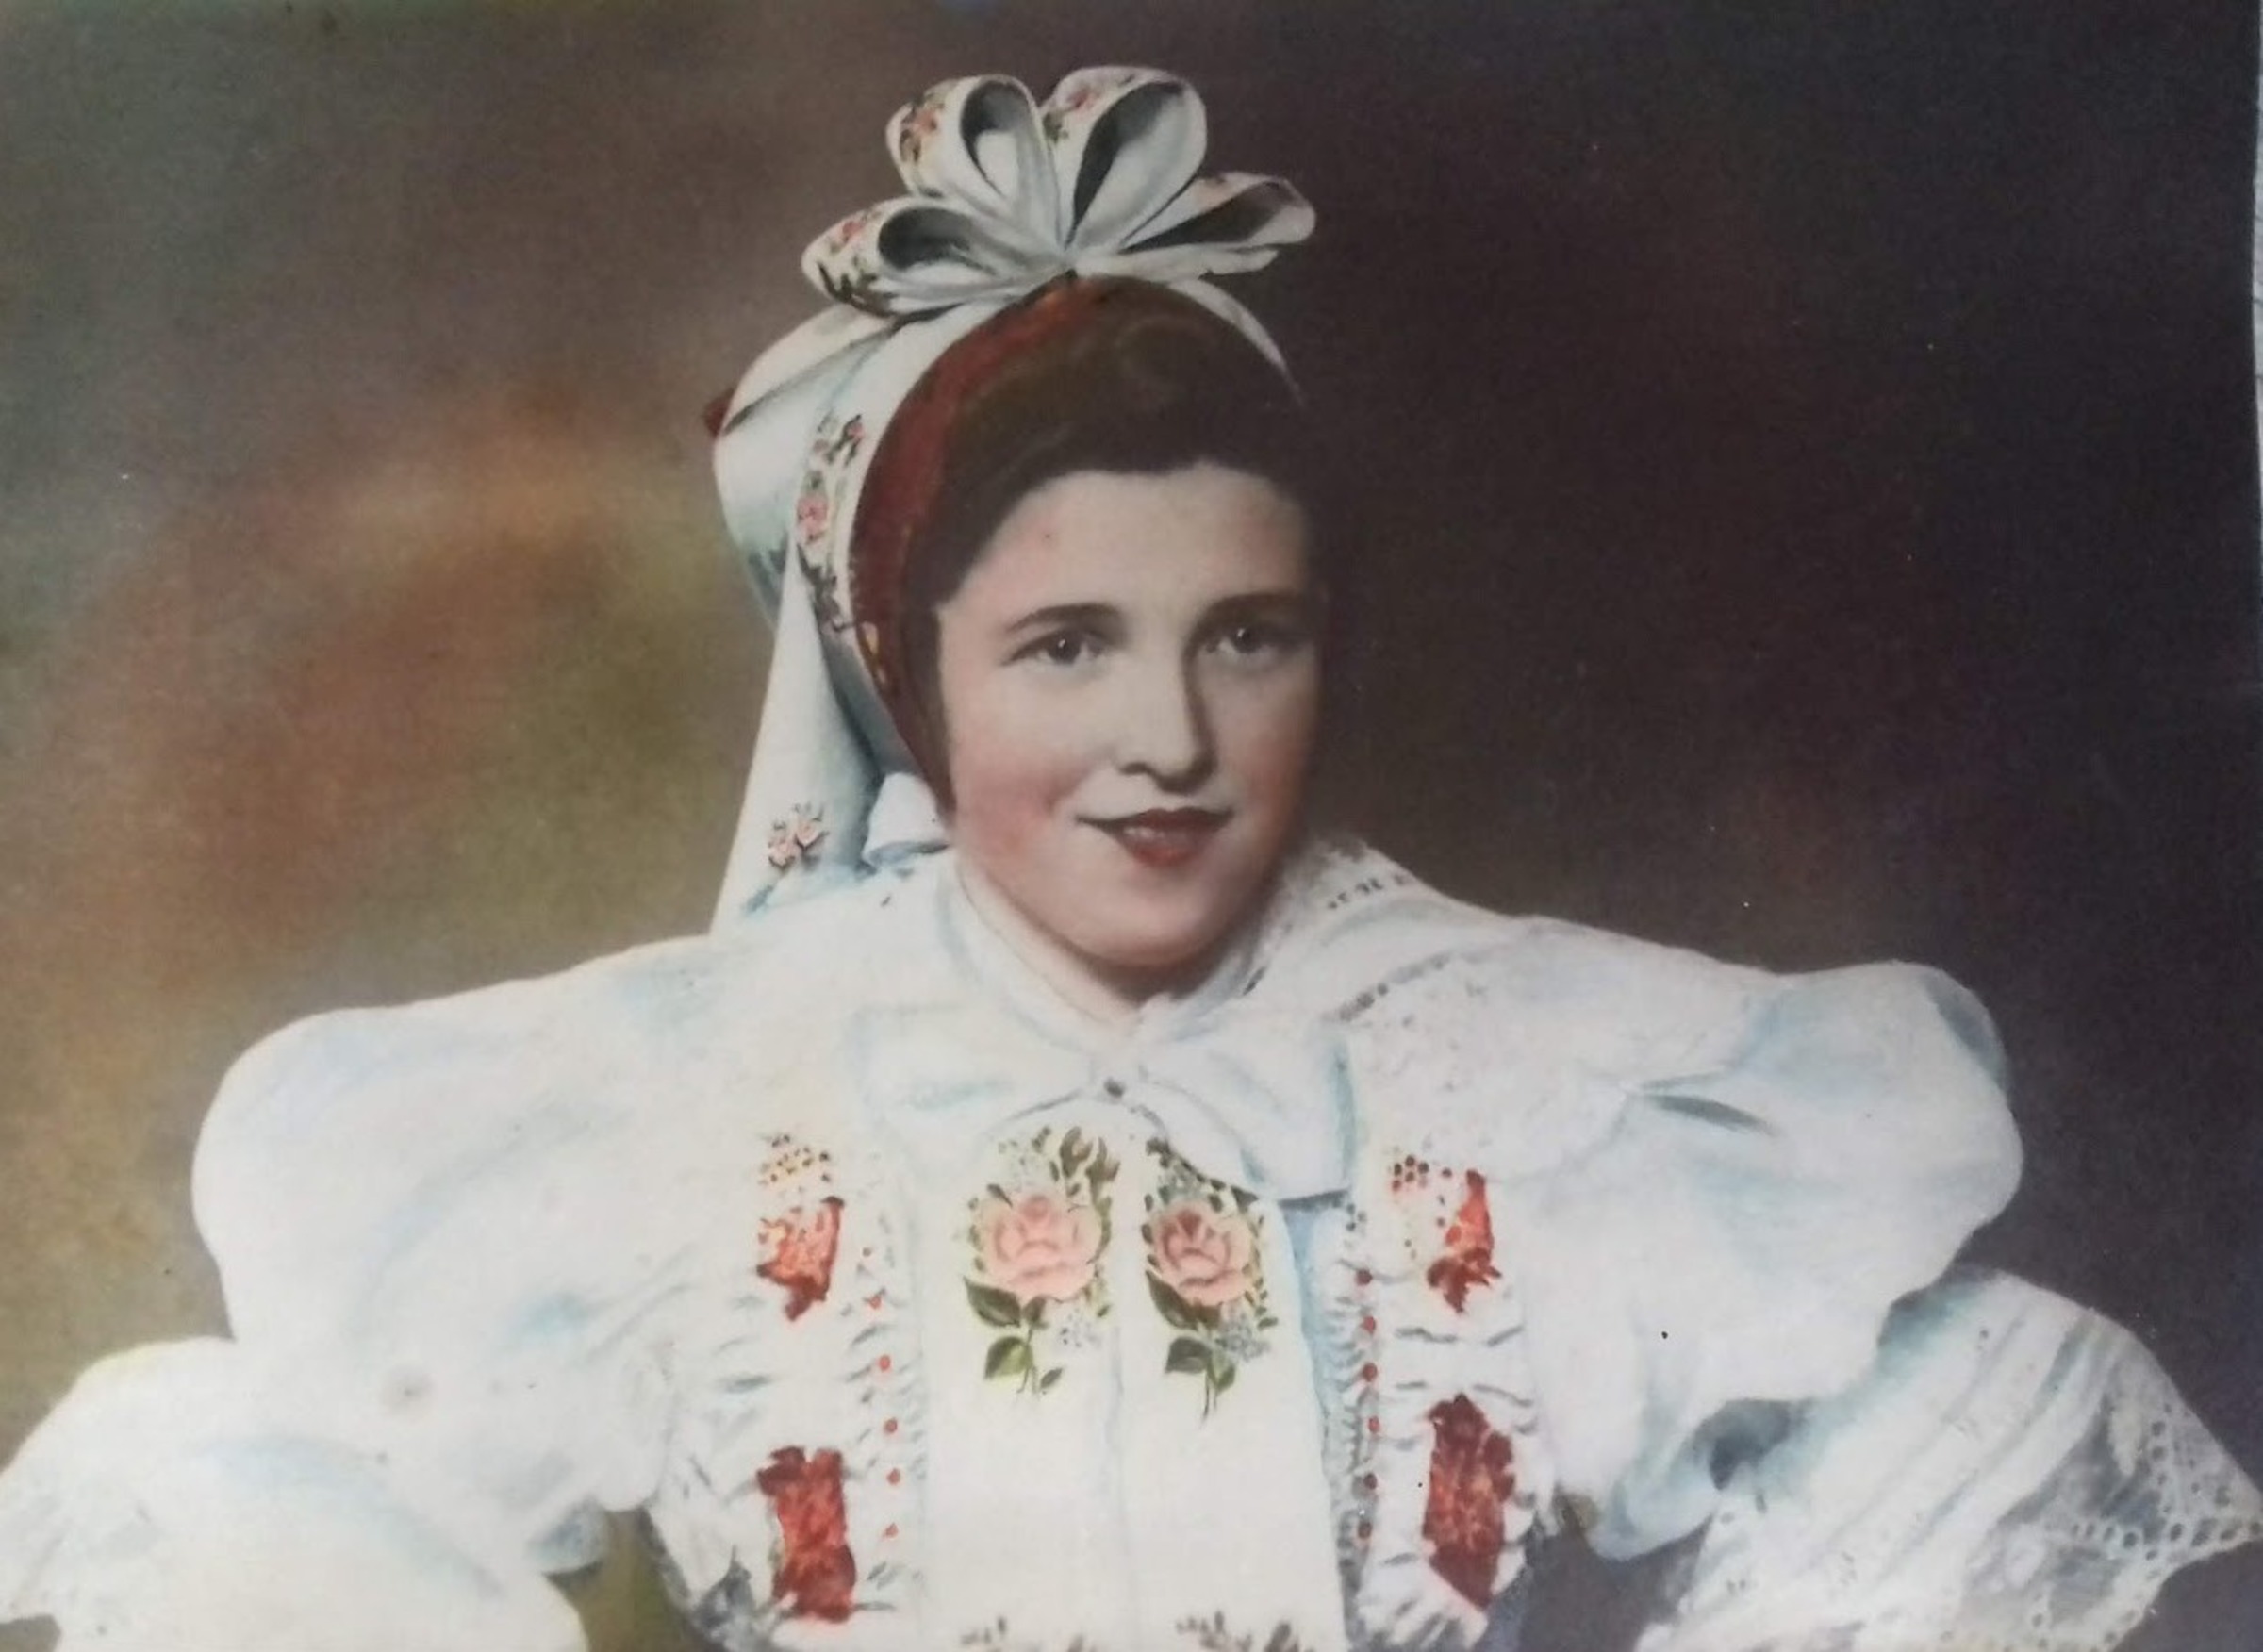 1949 - Aloisie in traditional costume, original photo